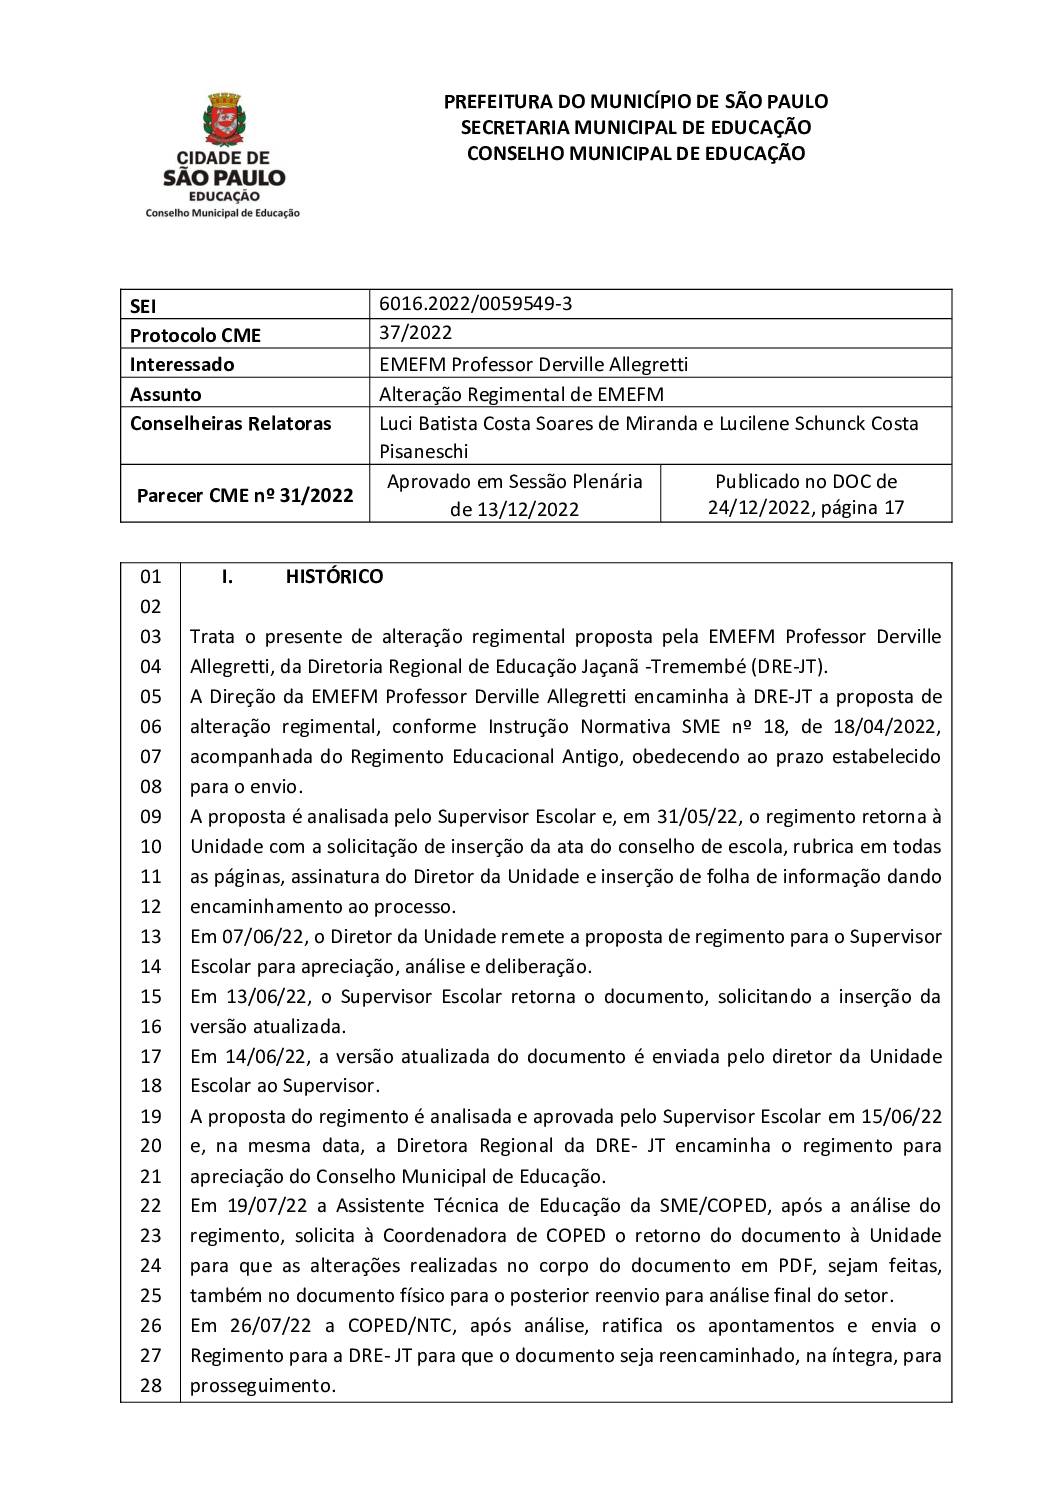 Parecer CME nº 31/2022 - EMEFM Professor Derville Allegretti (DRE JT) - Alteração Regimental de EMEFM